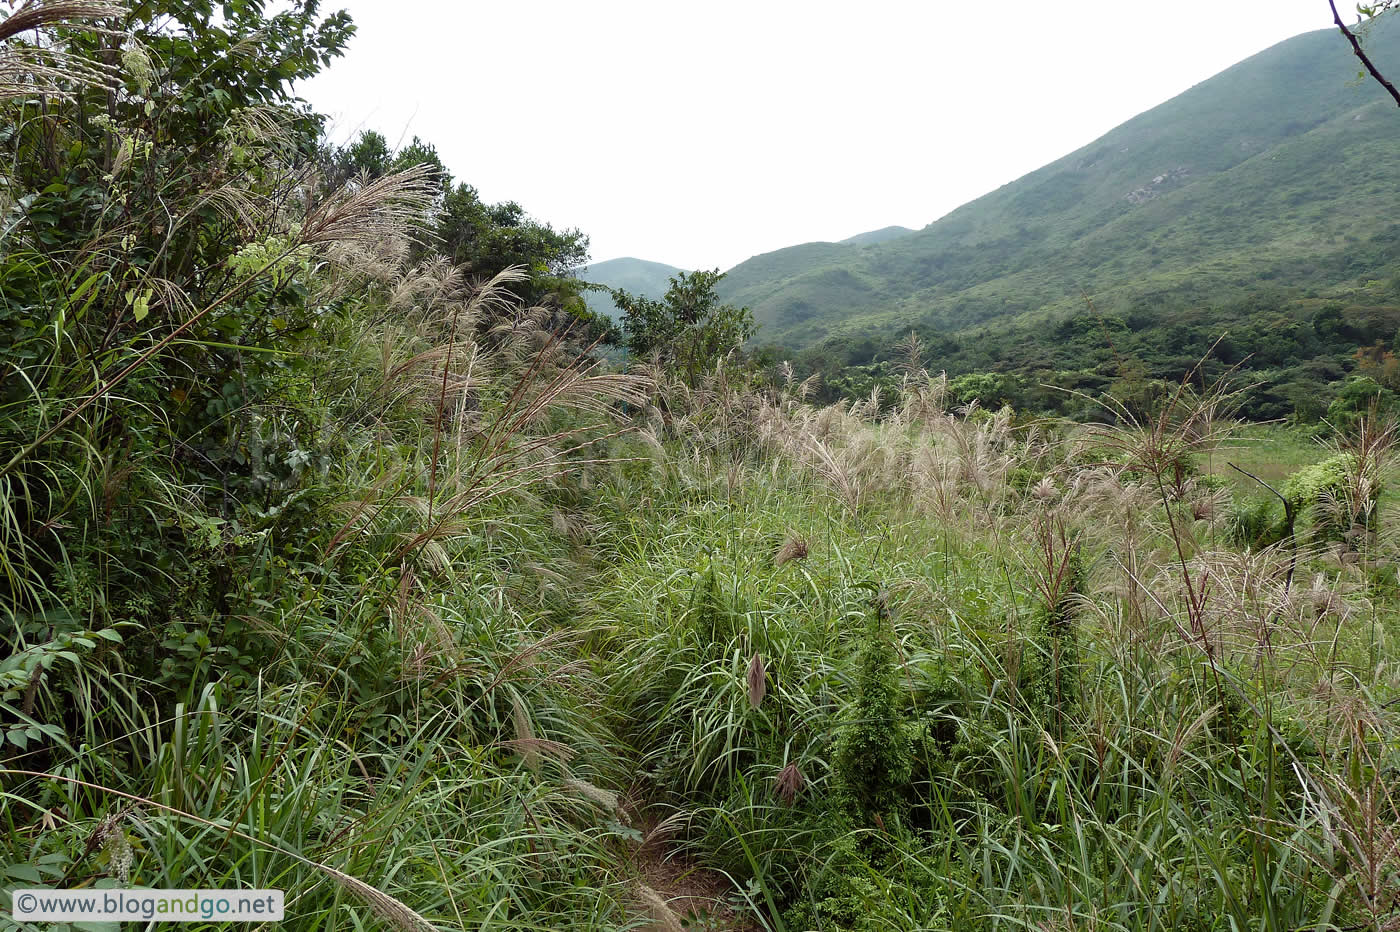 Lantau Trail 7 - Turn inland from Yi O bay